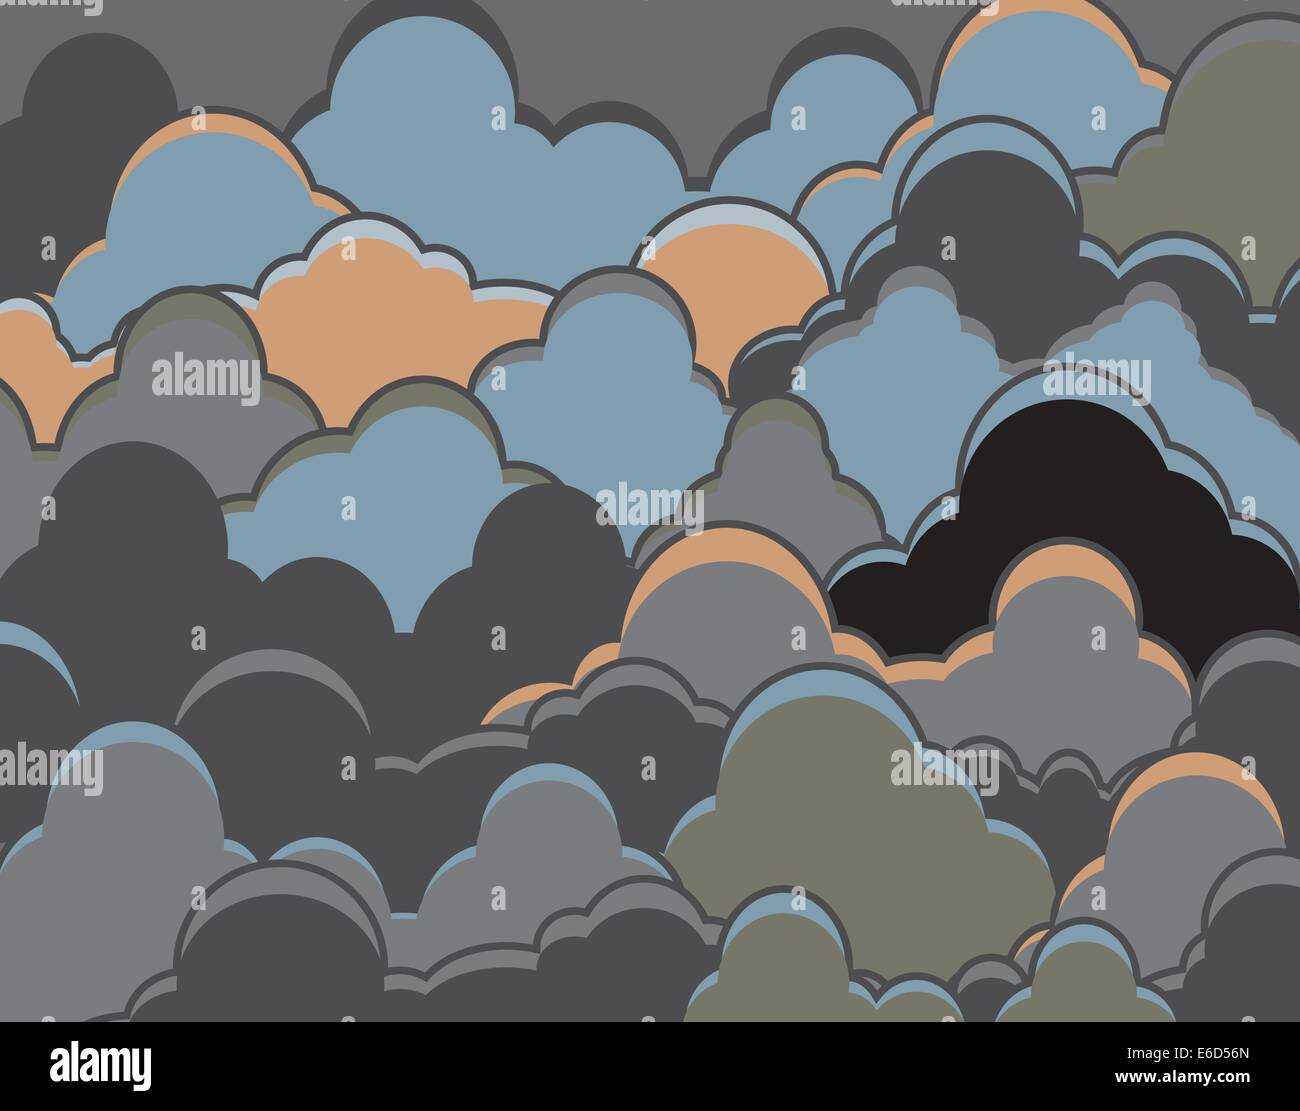 Bearbeitbares Vektor-Illustration von dunklen Wolken Stock Vektor